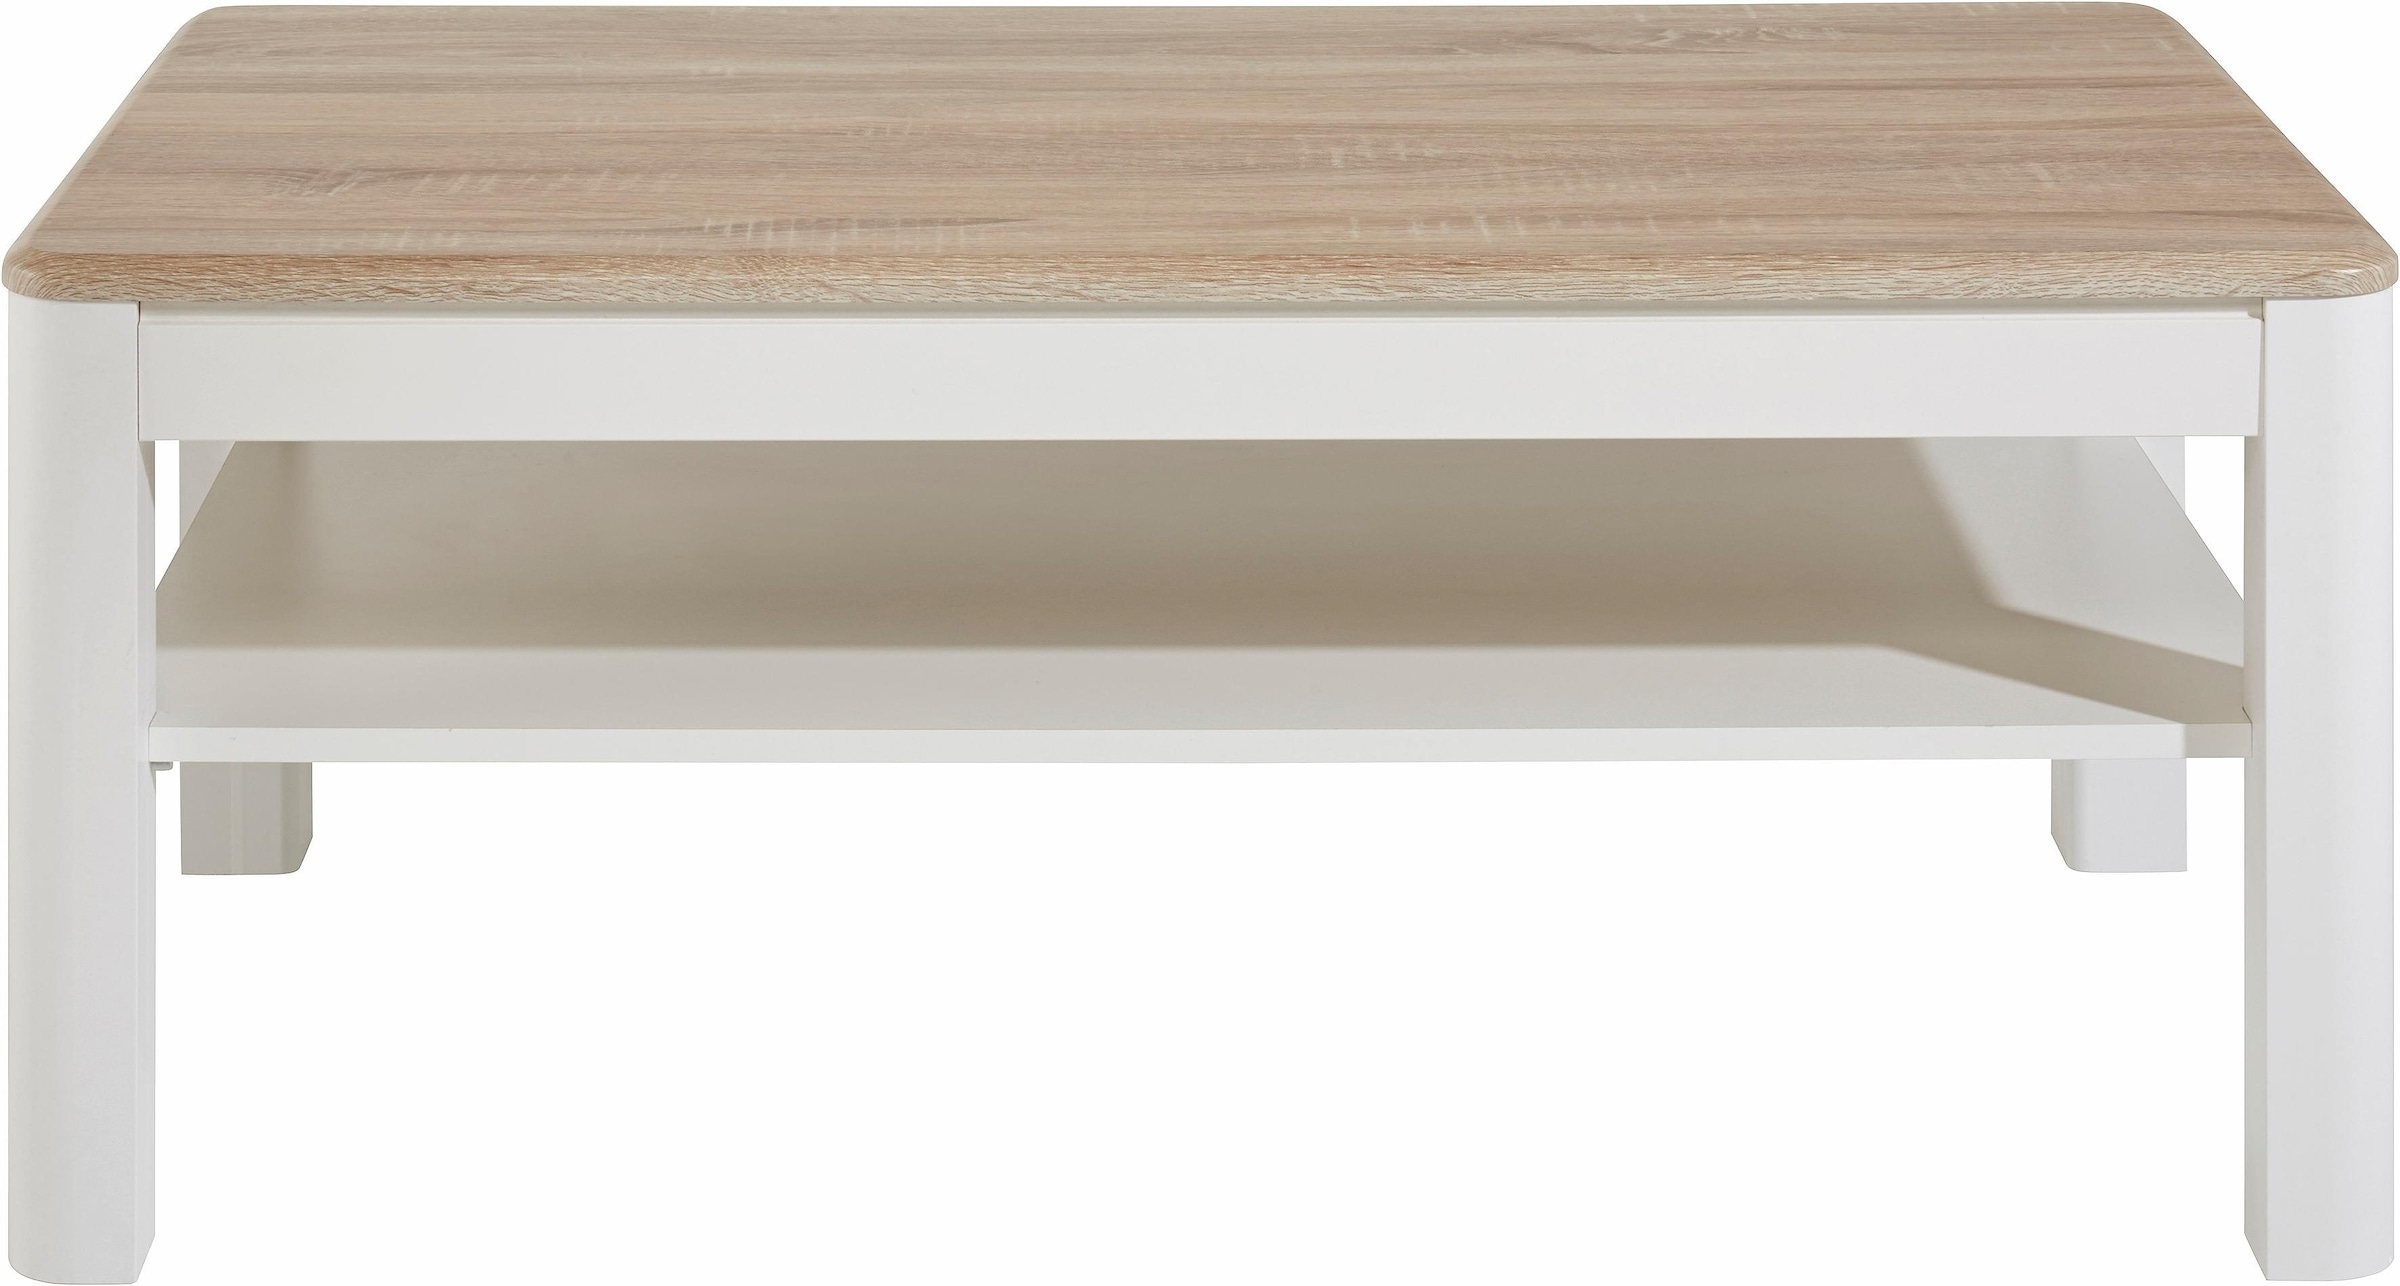 PRO Line Platte aus Online Sonoma Shop OTTO mit Eiche Couchtisch, Ablageboden, Nachbildung Holz